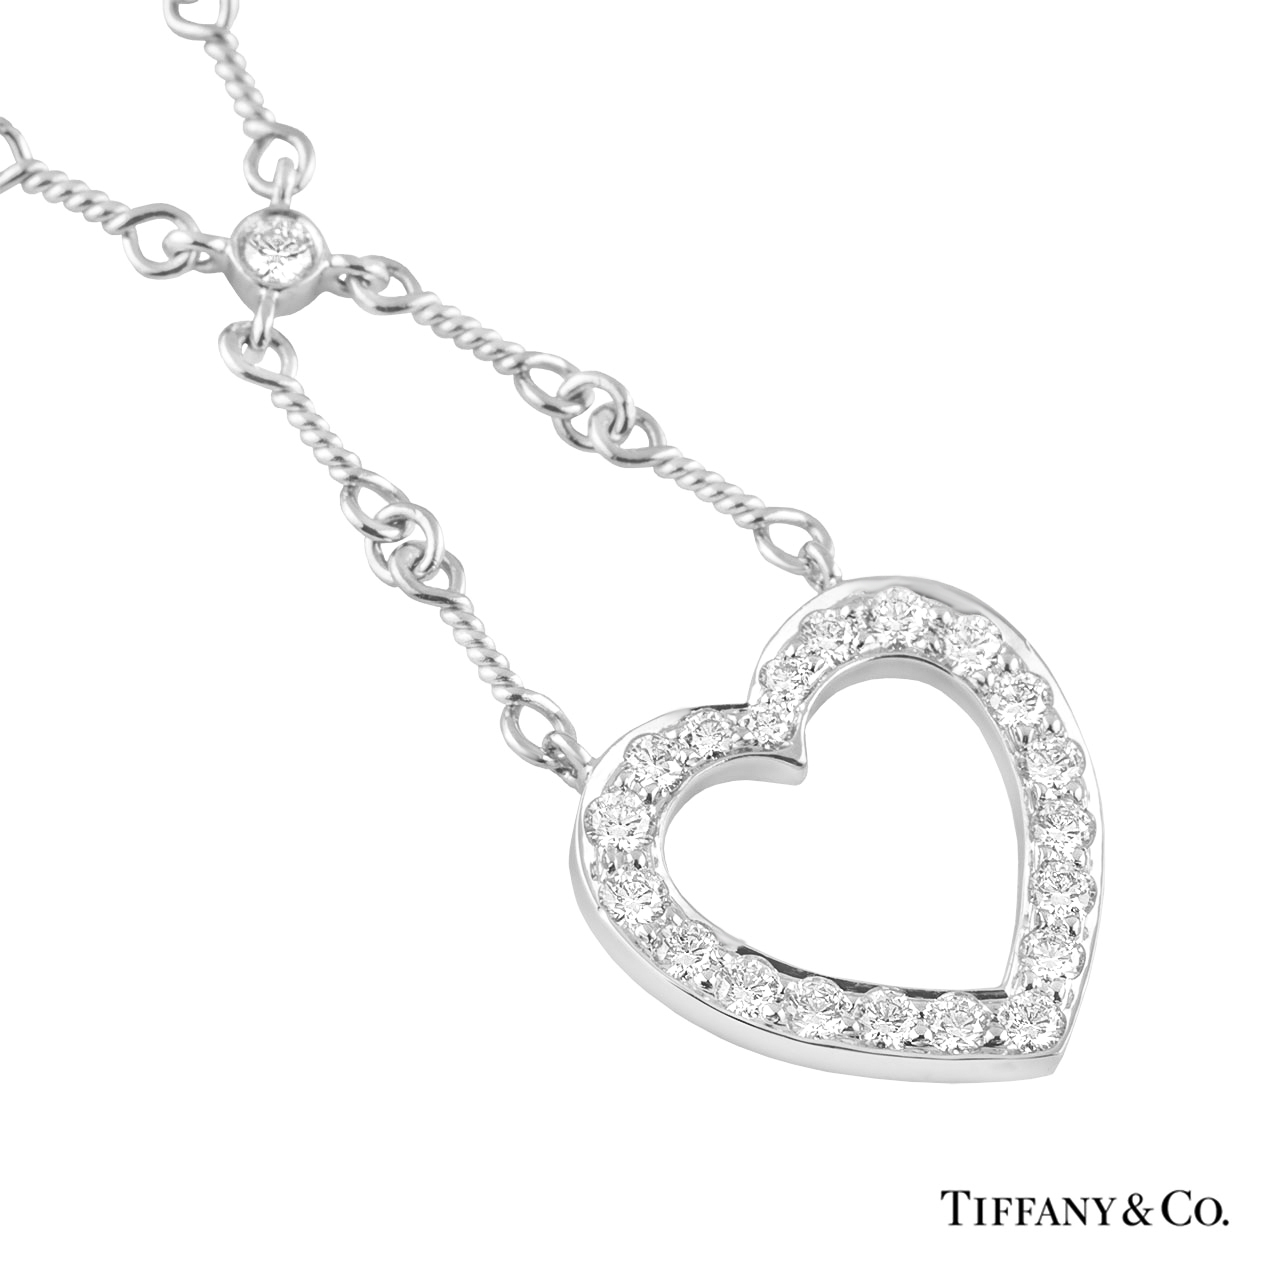 Tiffany & Co. Diamond Heart Pendant